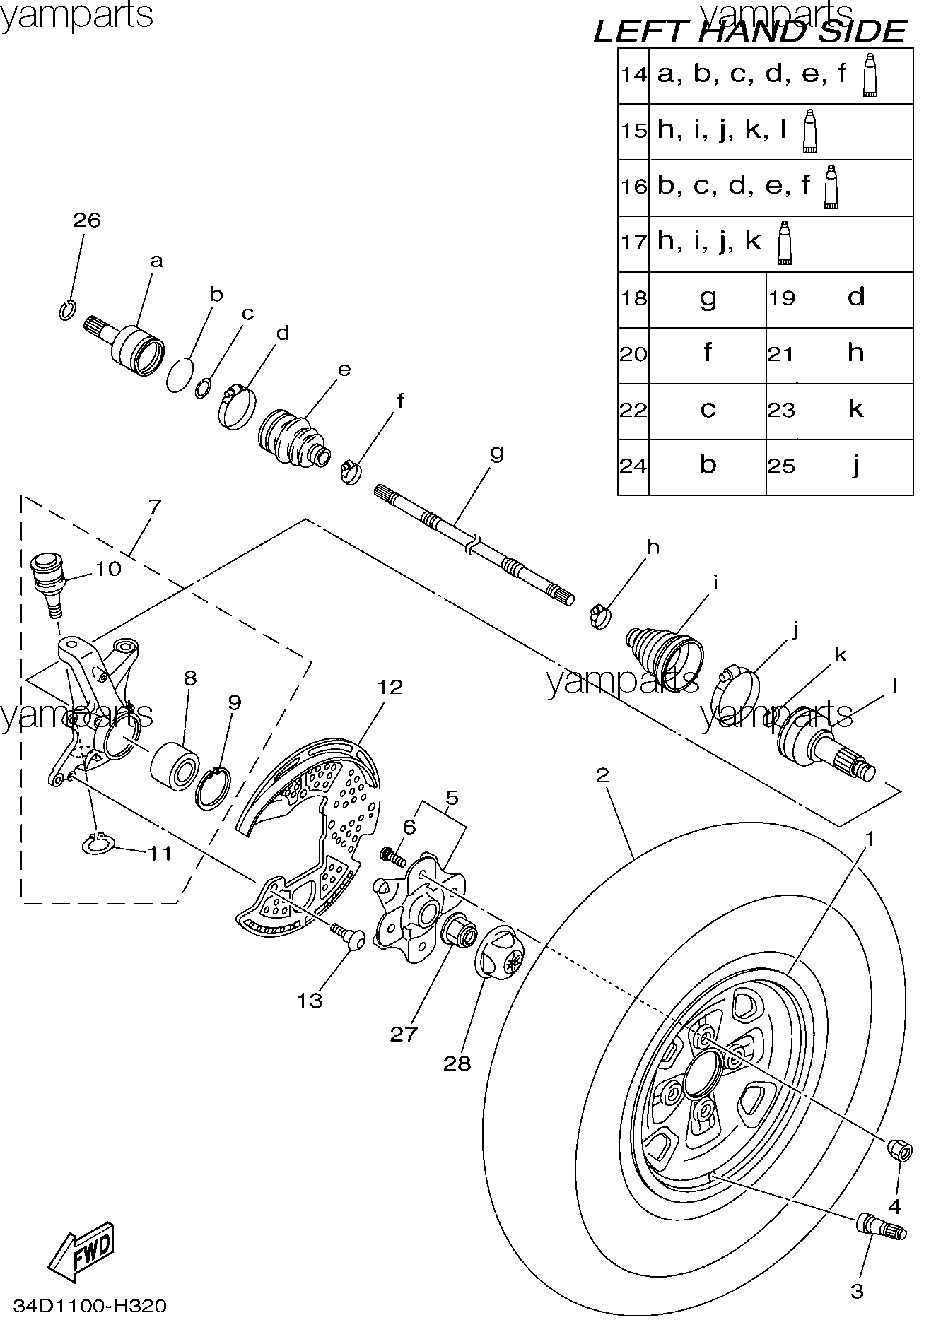 Передний левый привод и колесо